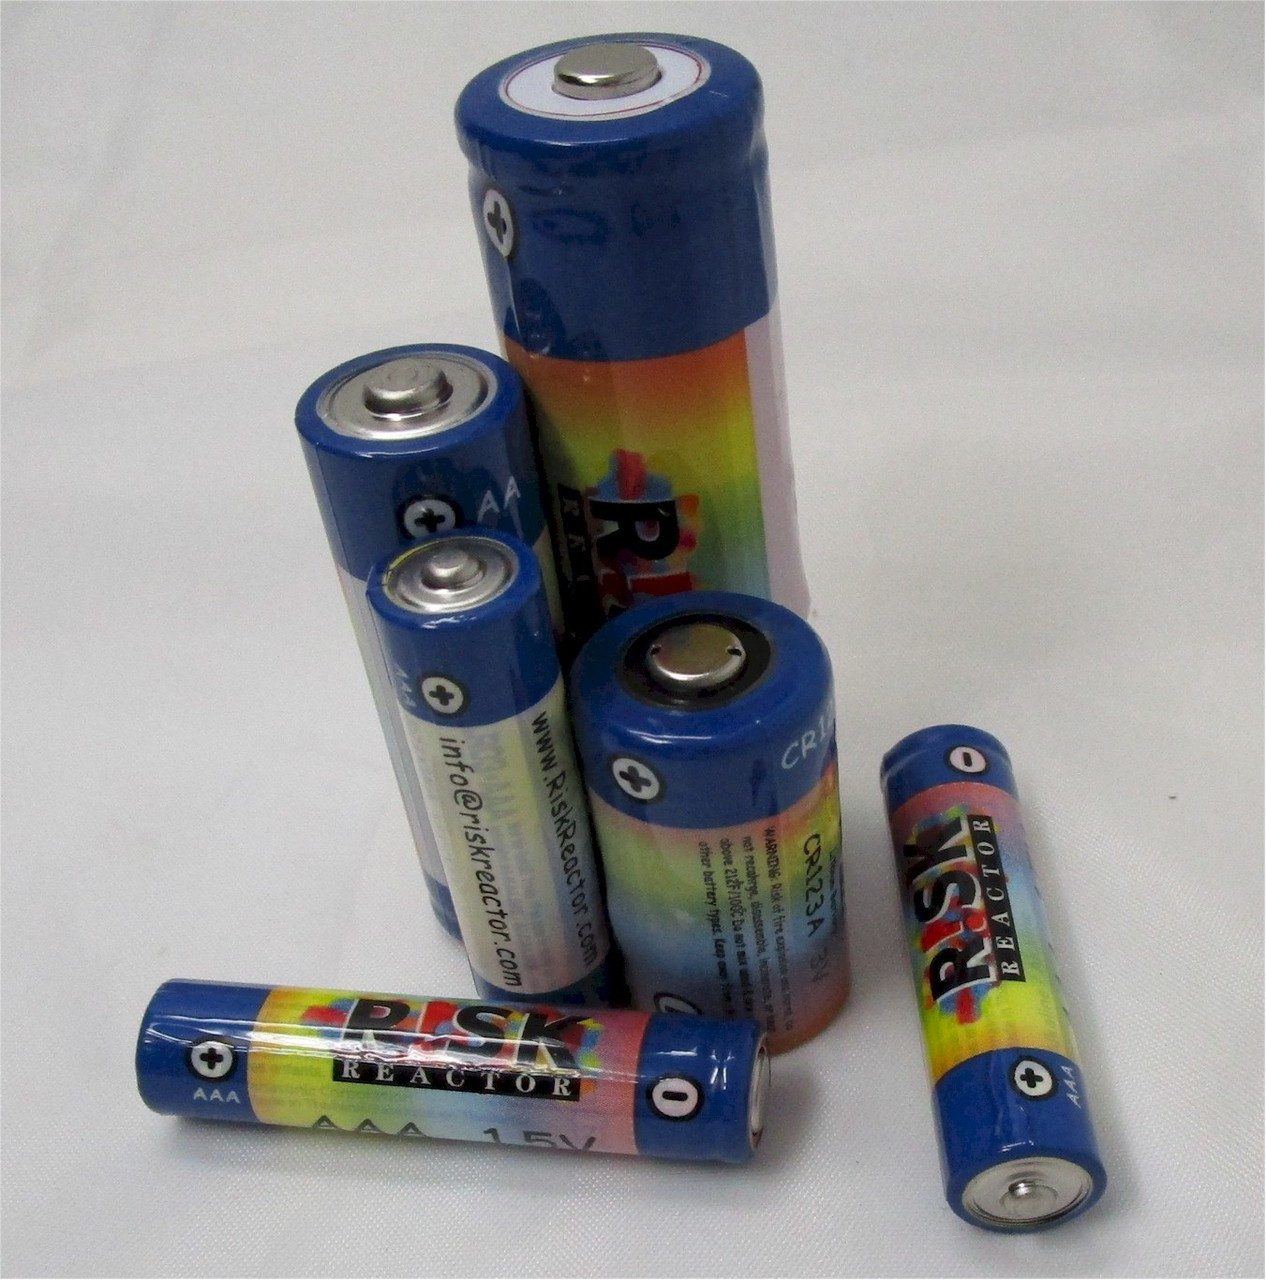 Armytek Bateria CR123A Talla u Color sin color